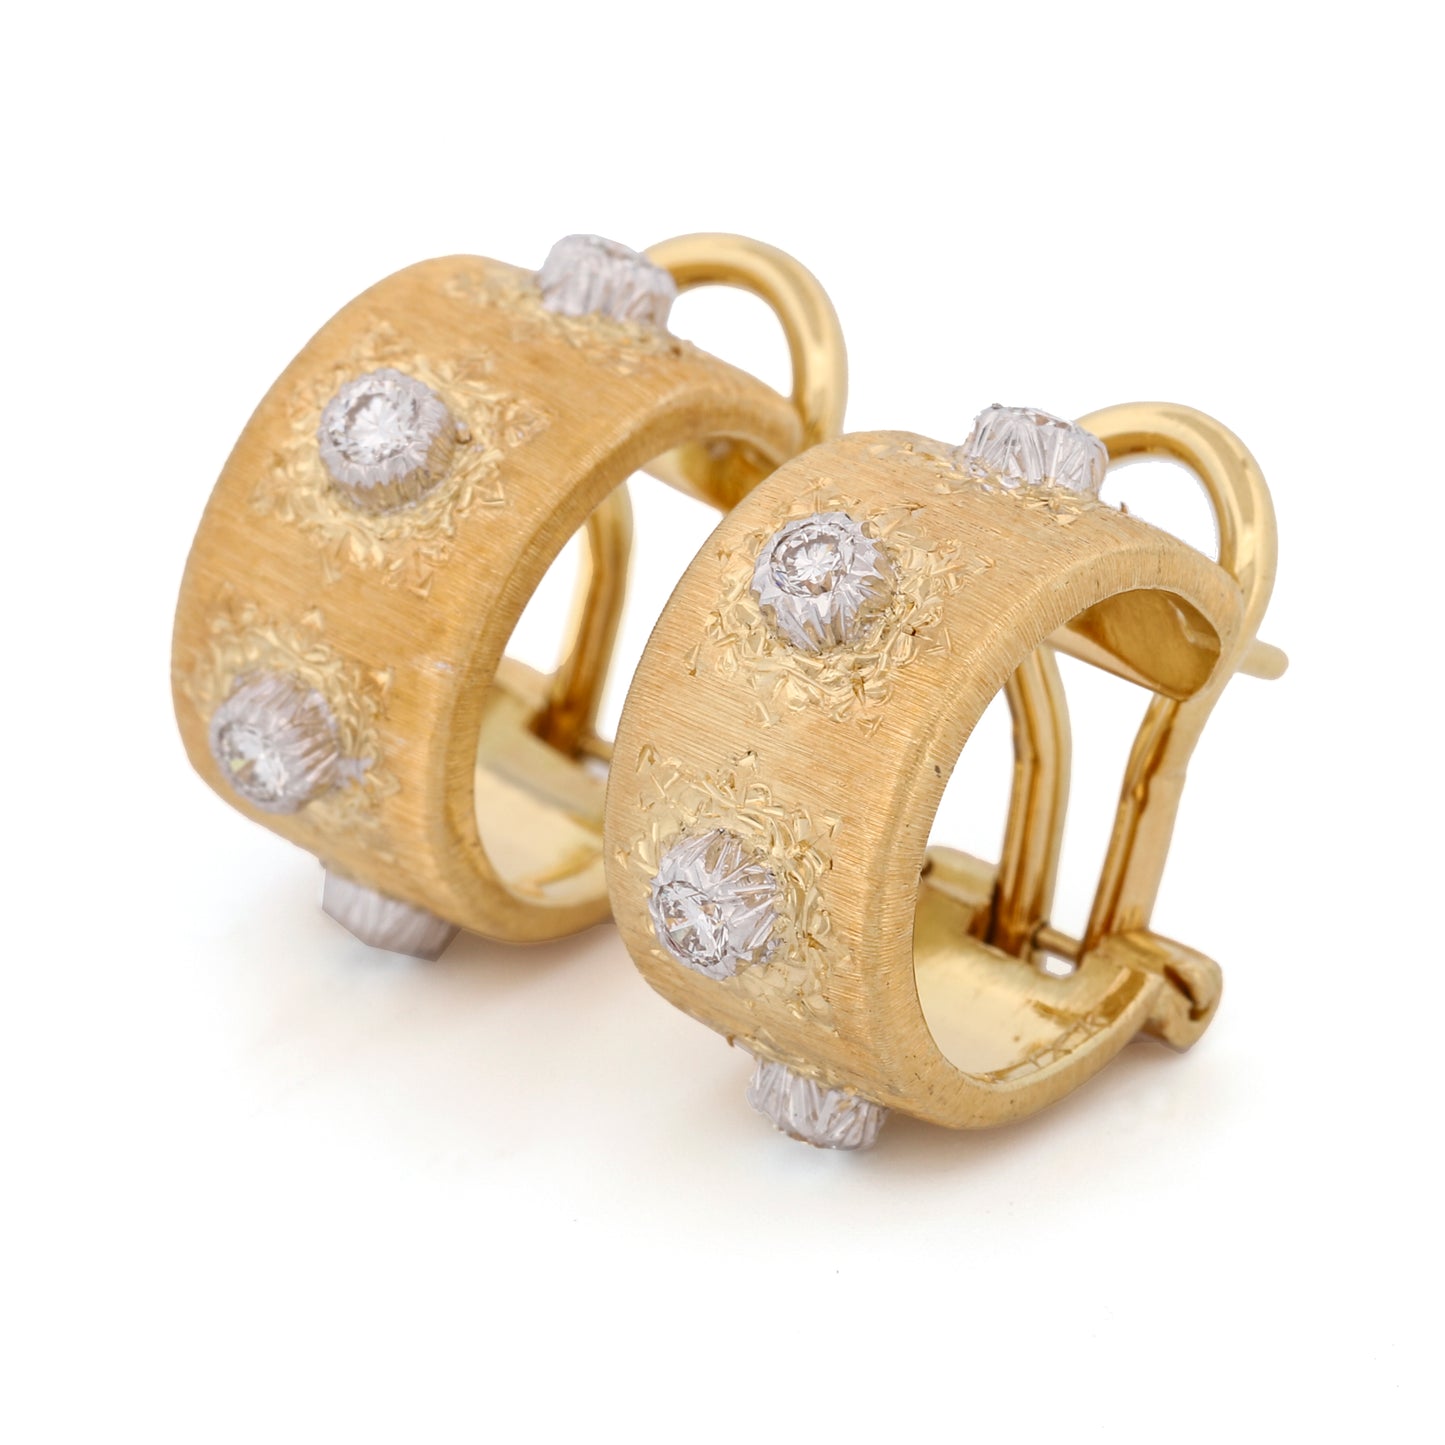 Buccellati Macri Classica 4-Diamond Small Hoop Earrings in 18k Yellow Gold